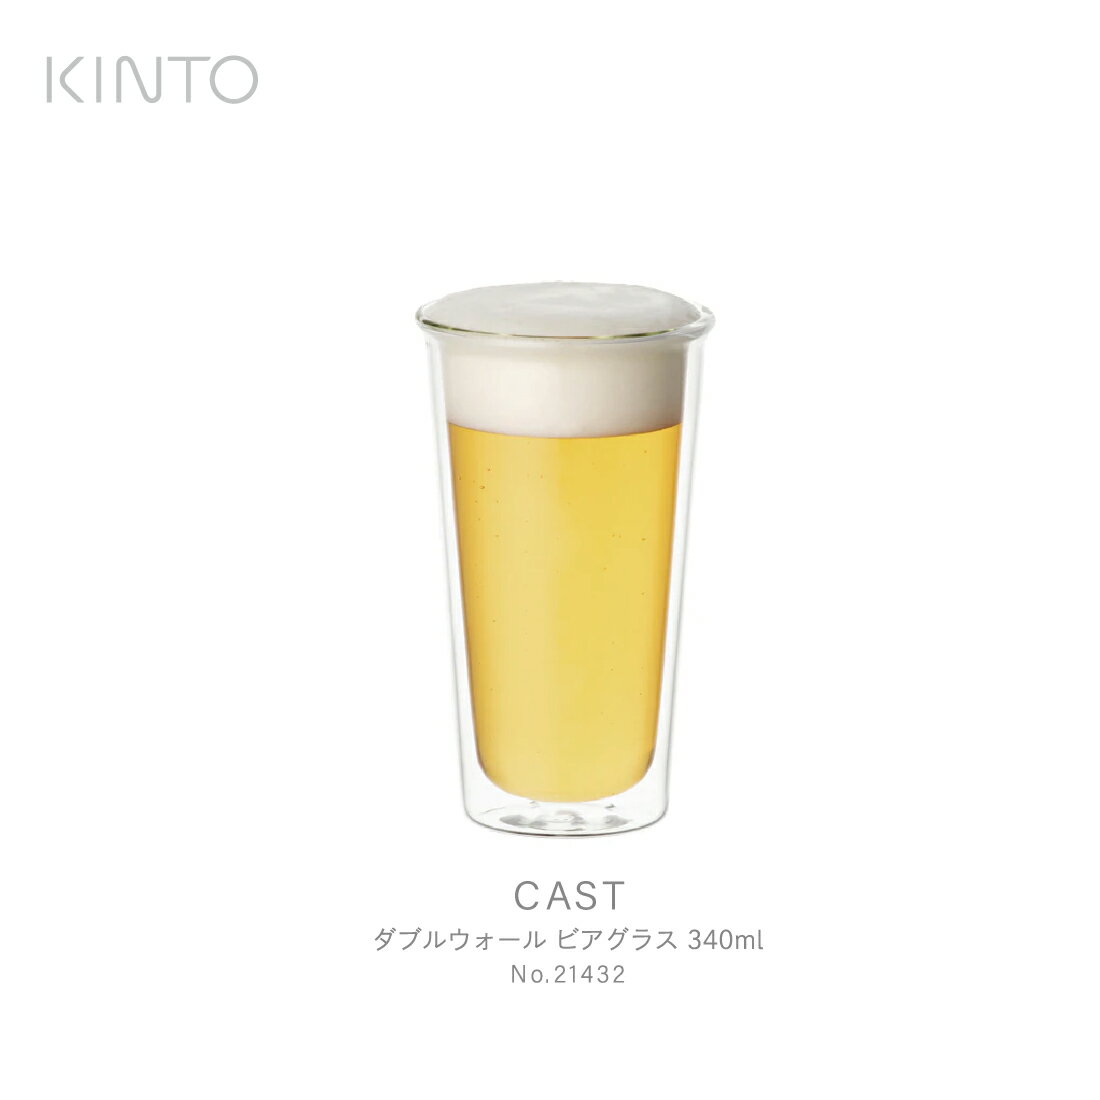 キントー ビールグラス KINTO キント CAST ダブルウォール ビアグラス 340ml 21432 ガラス ビール